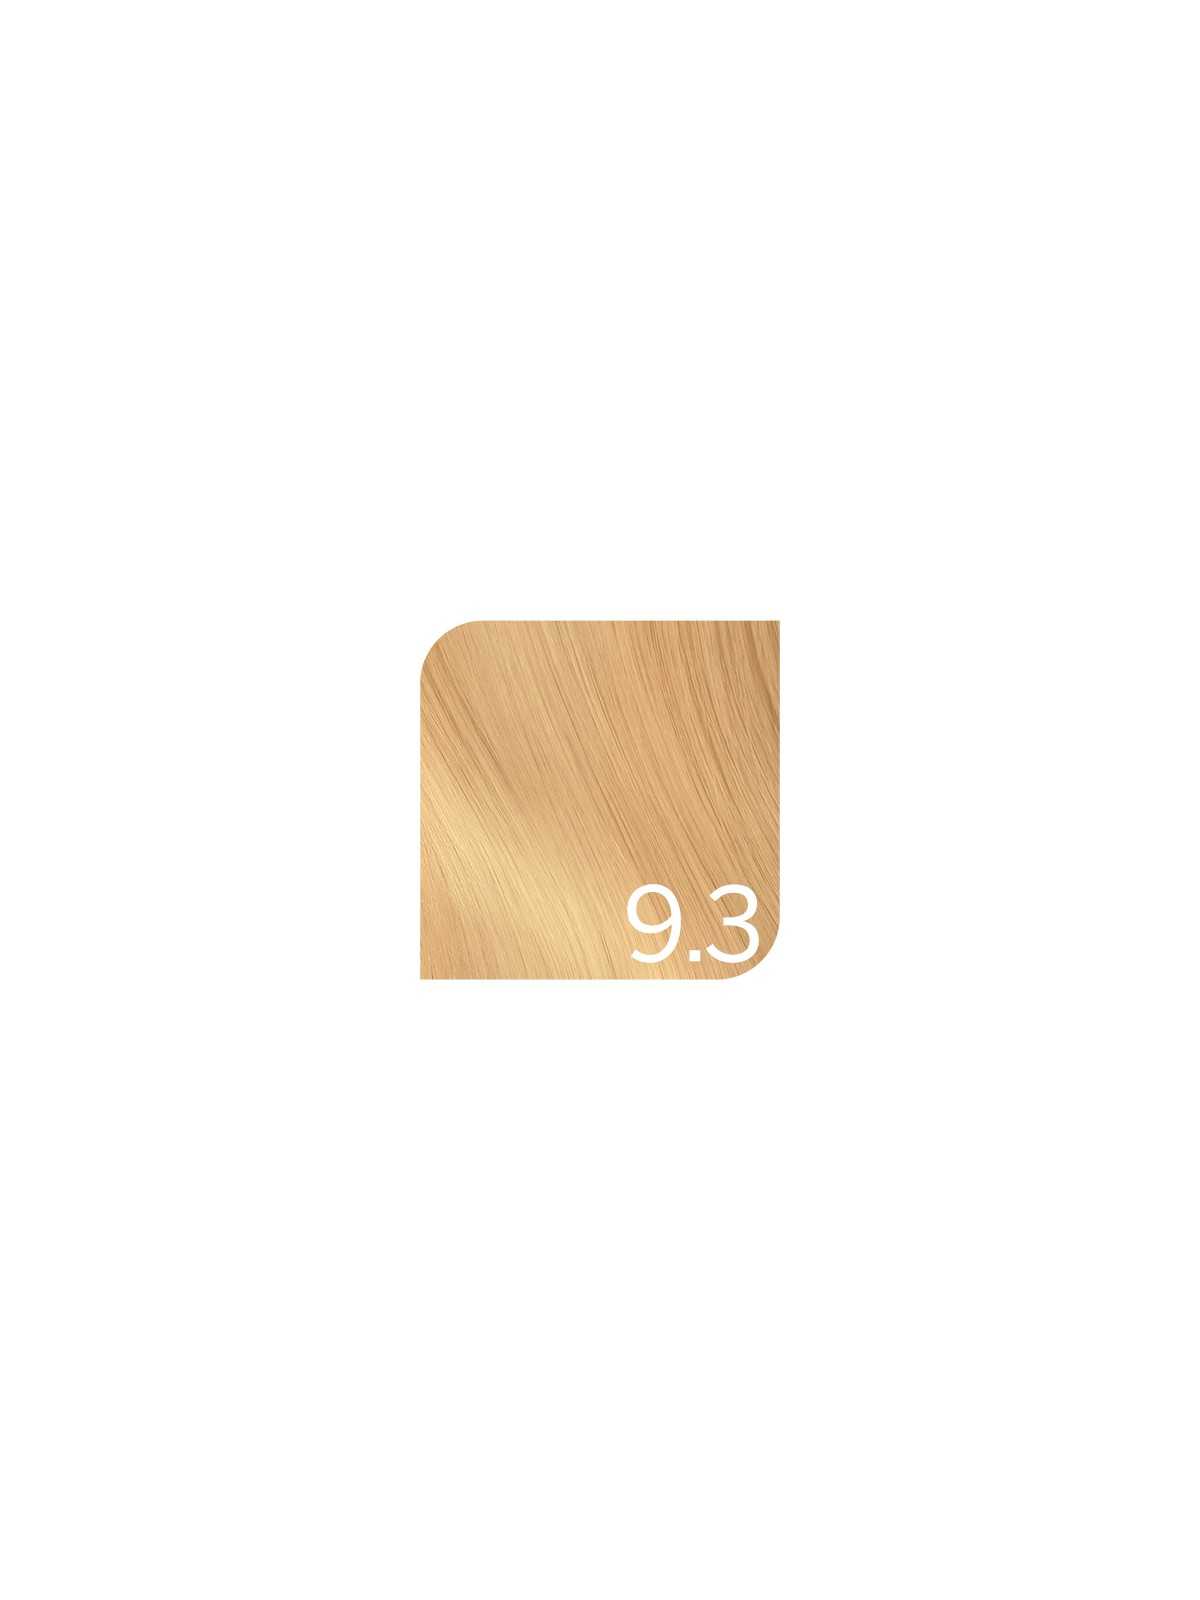 Comprar Revlon Tinte Revlonissimo Colorsmetique 9.3 Rubio muy claro dorado 60ml en Tintes con amoniaco por sólo 14,91 € o un precio específico de 8,95 € en Thalie Care